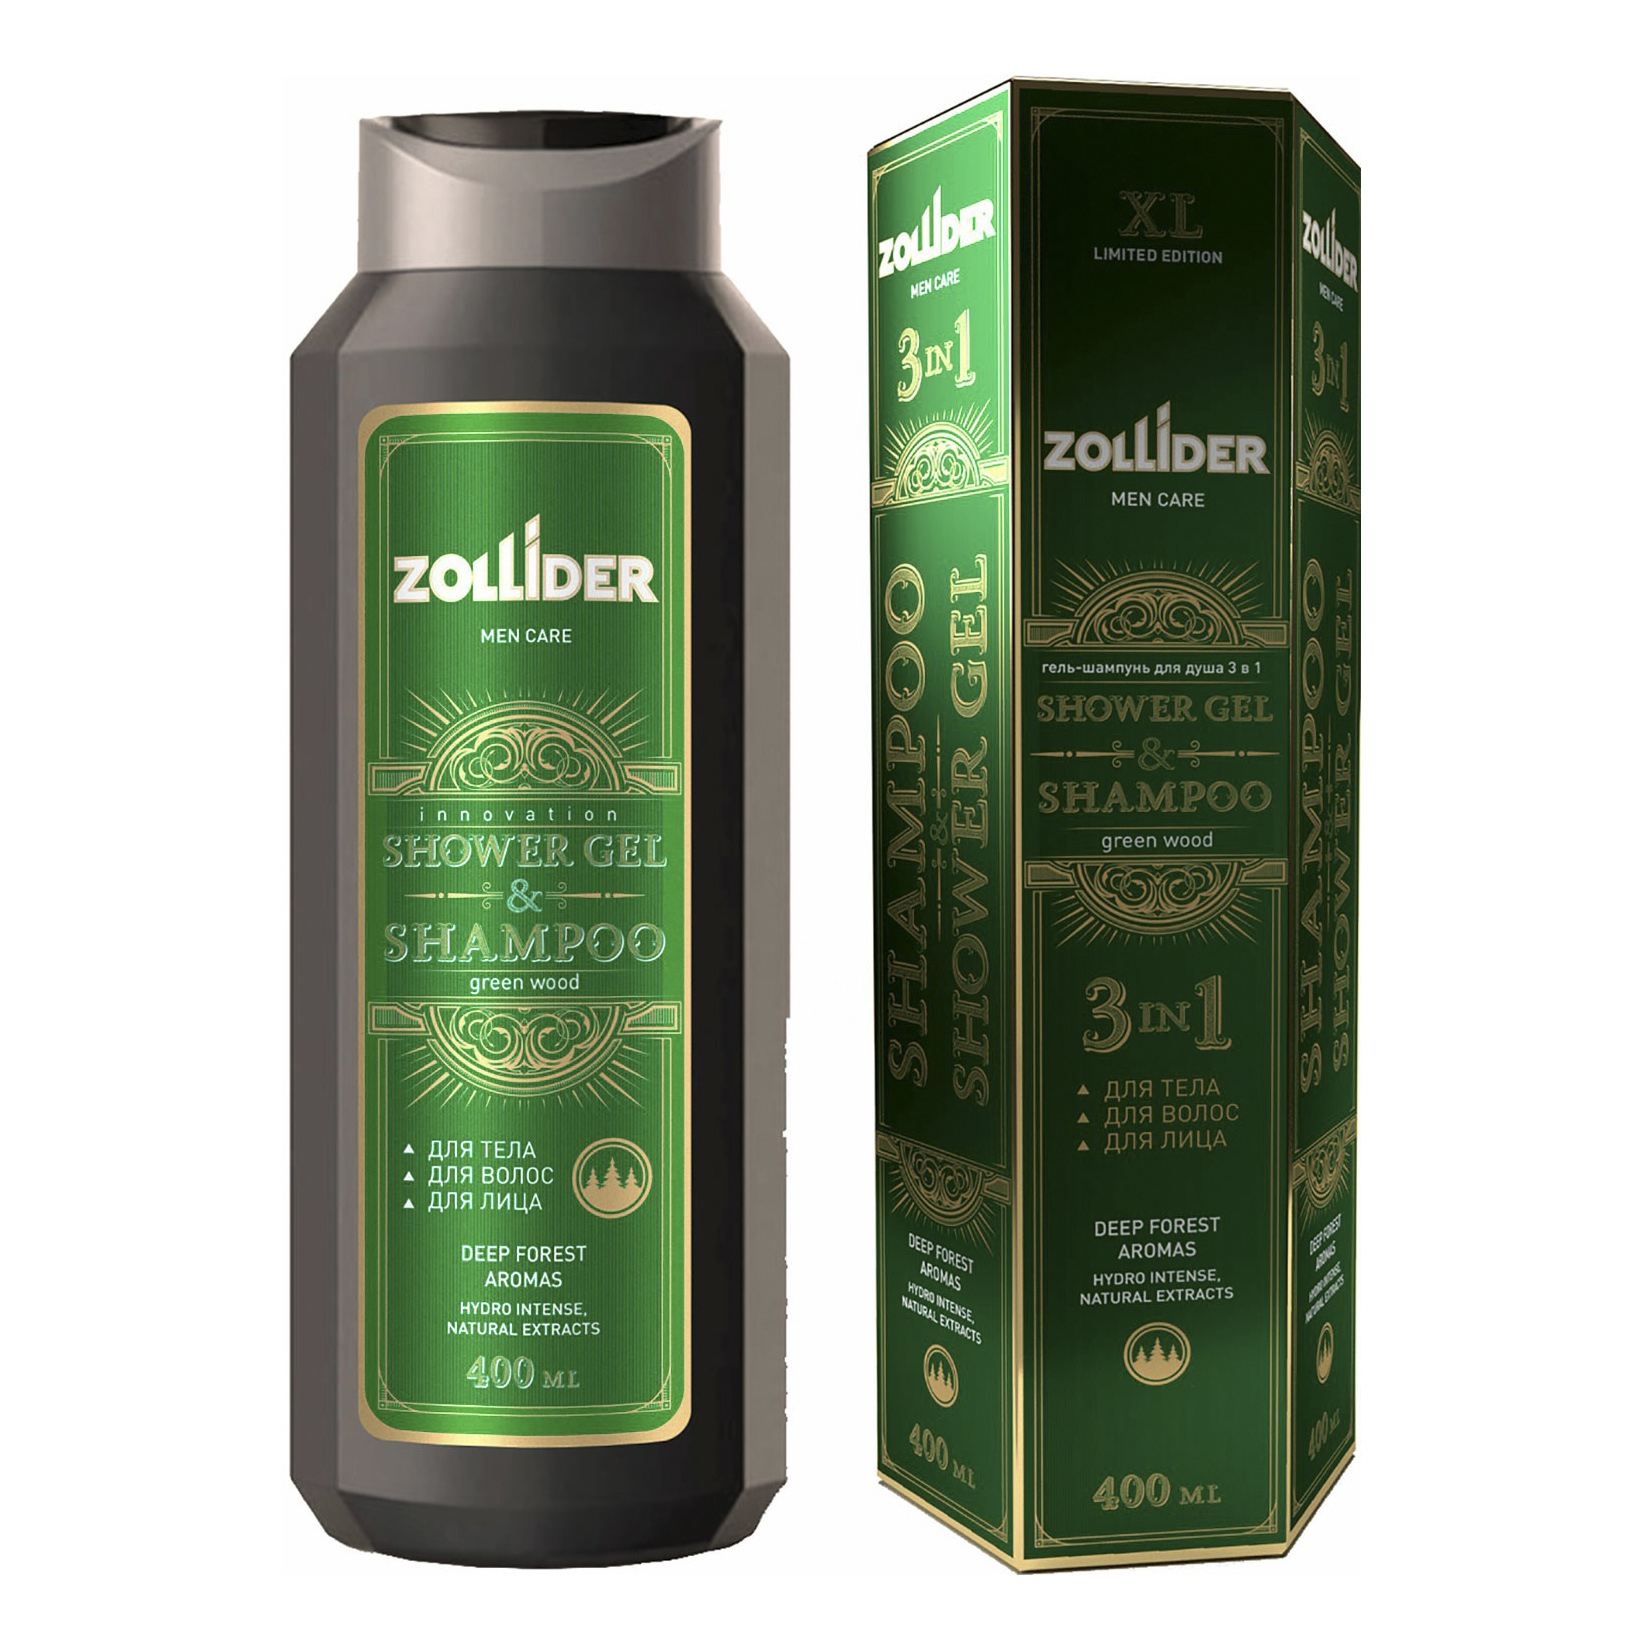 Гель-шампунь Zollider Green Wood увлажняющий 200 мл х 2 шт.